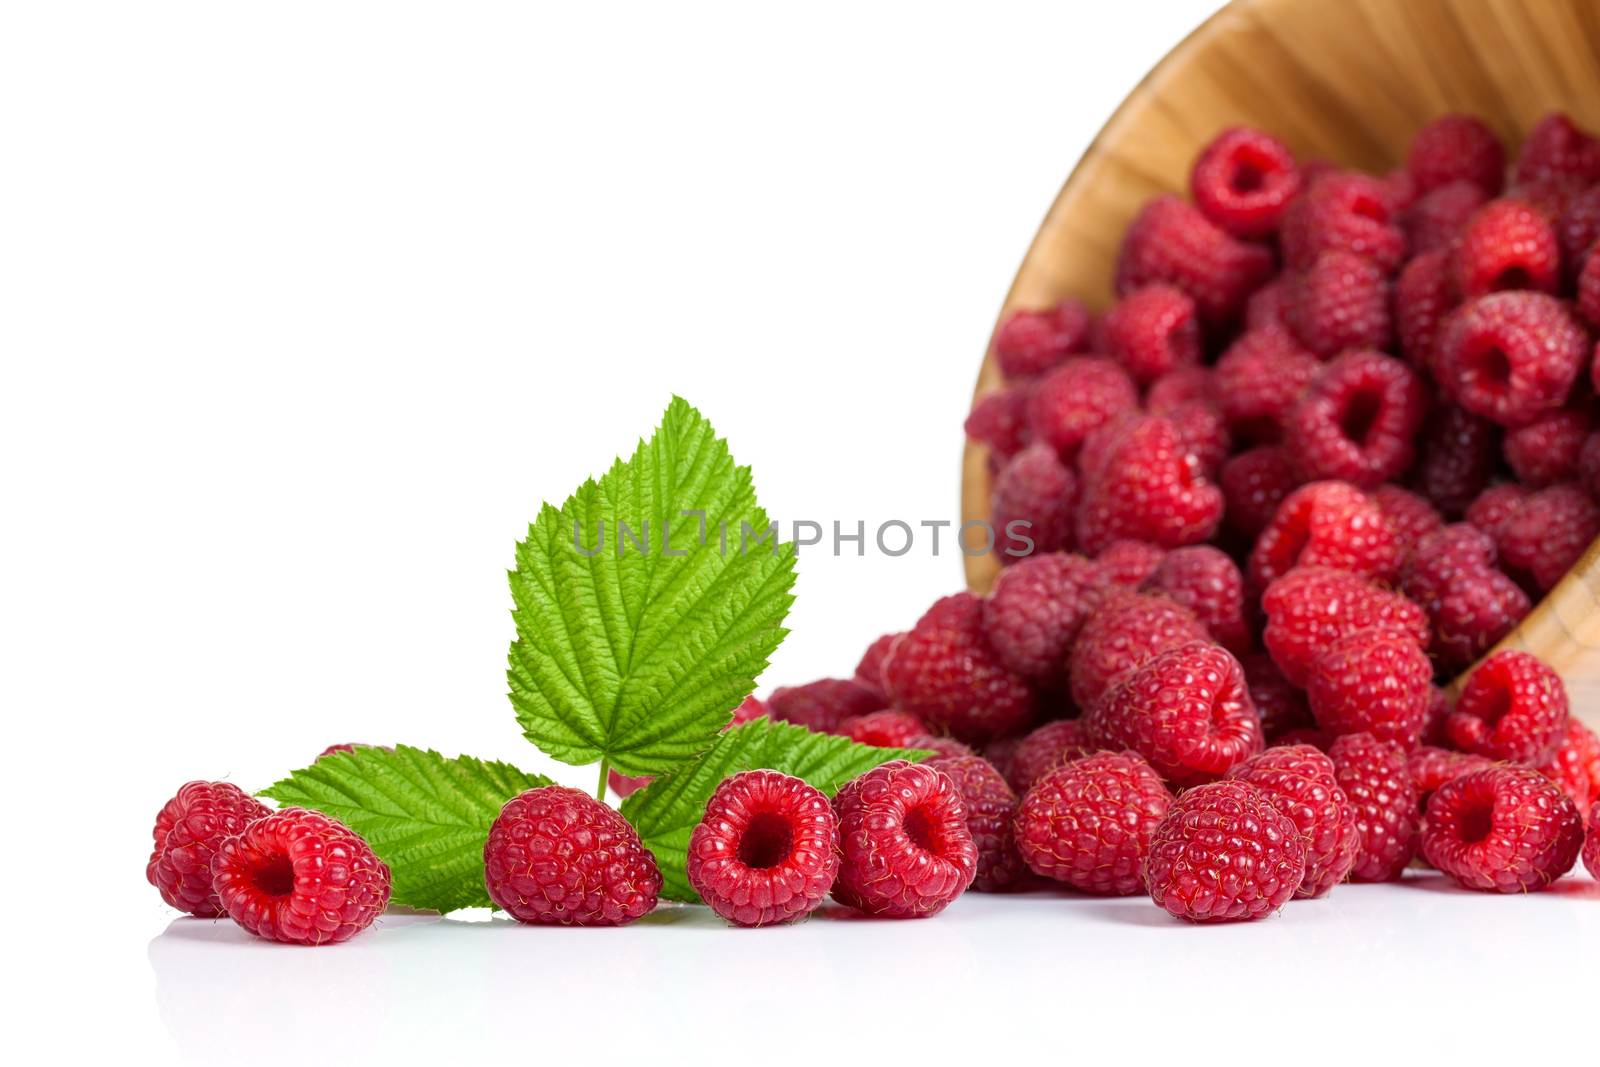 Raspberries by bozena_fulawka